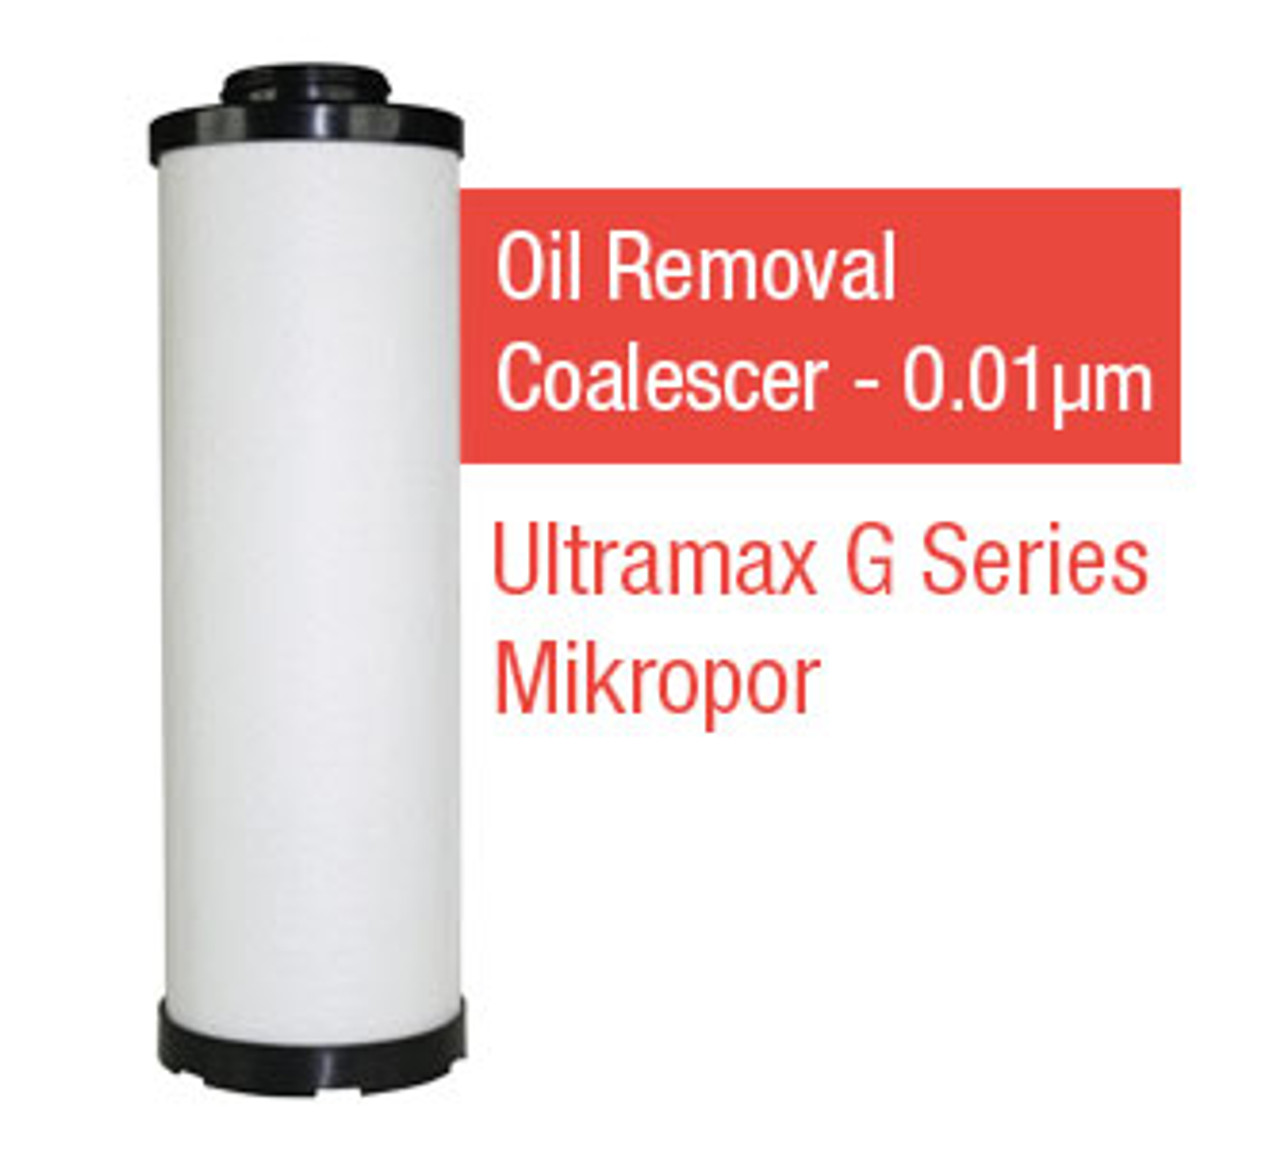 M24Y - Grade Y - Oil Removal Coalescer - 0.01 um (M24Y/G24MY)